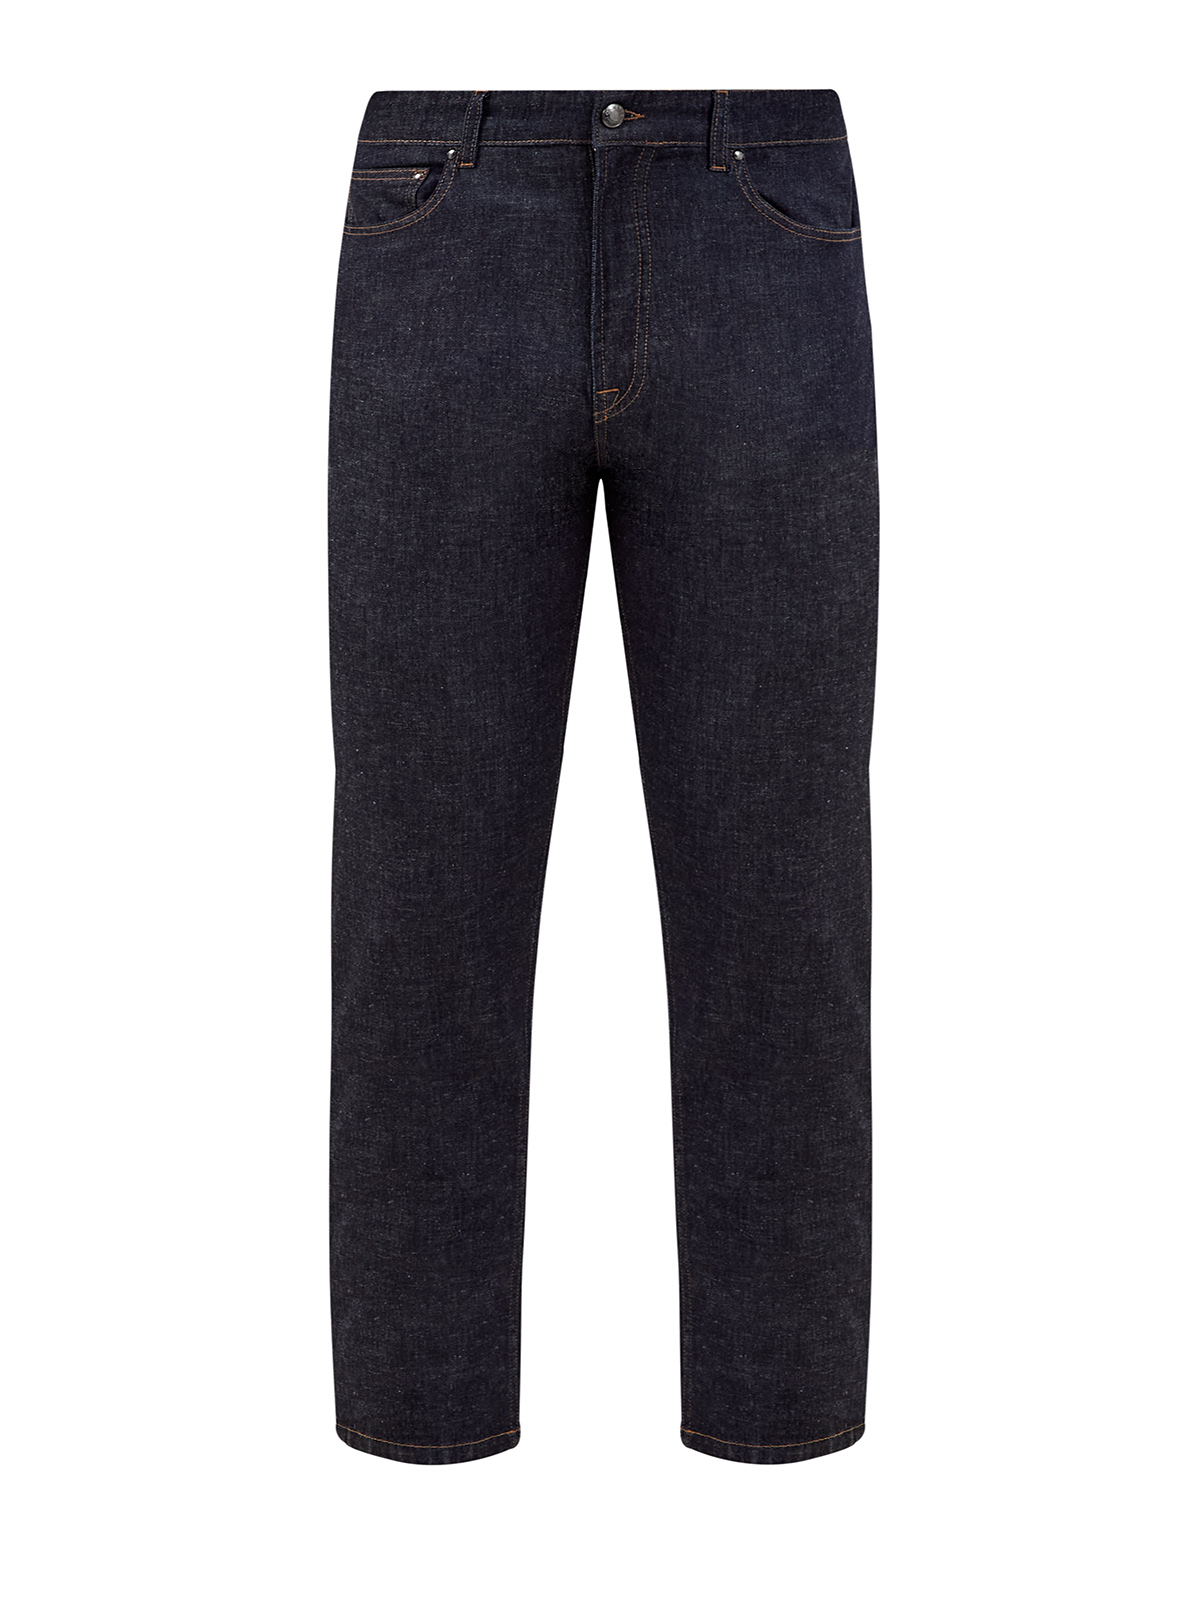 Окрашенные вручную джинсы с волокнами льна и лиоцелла